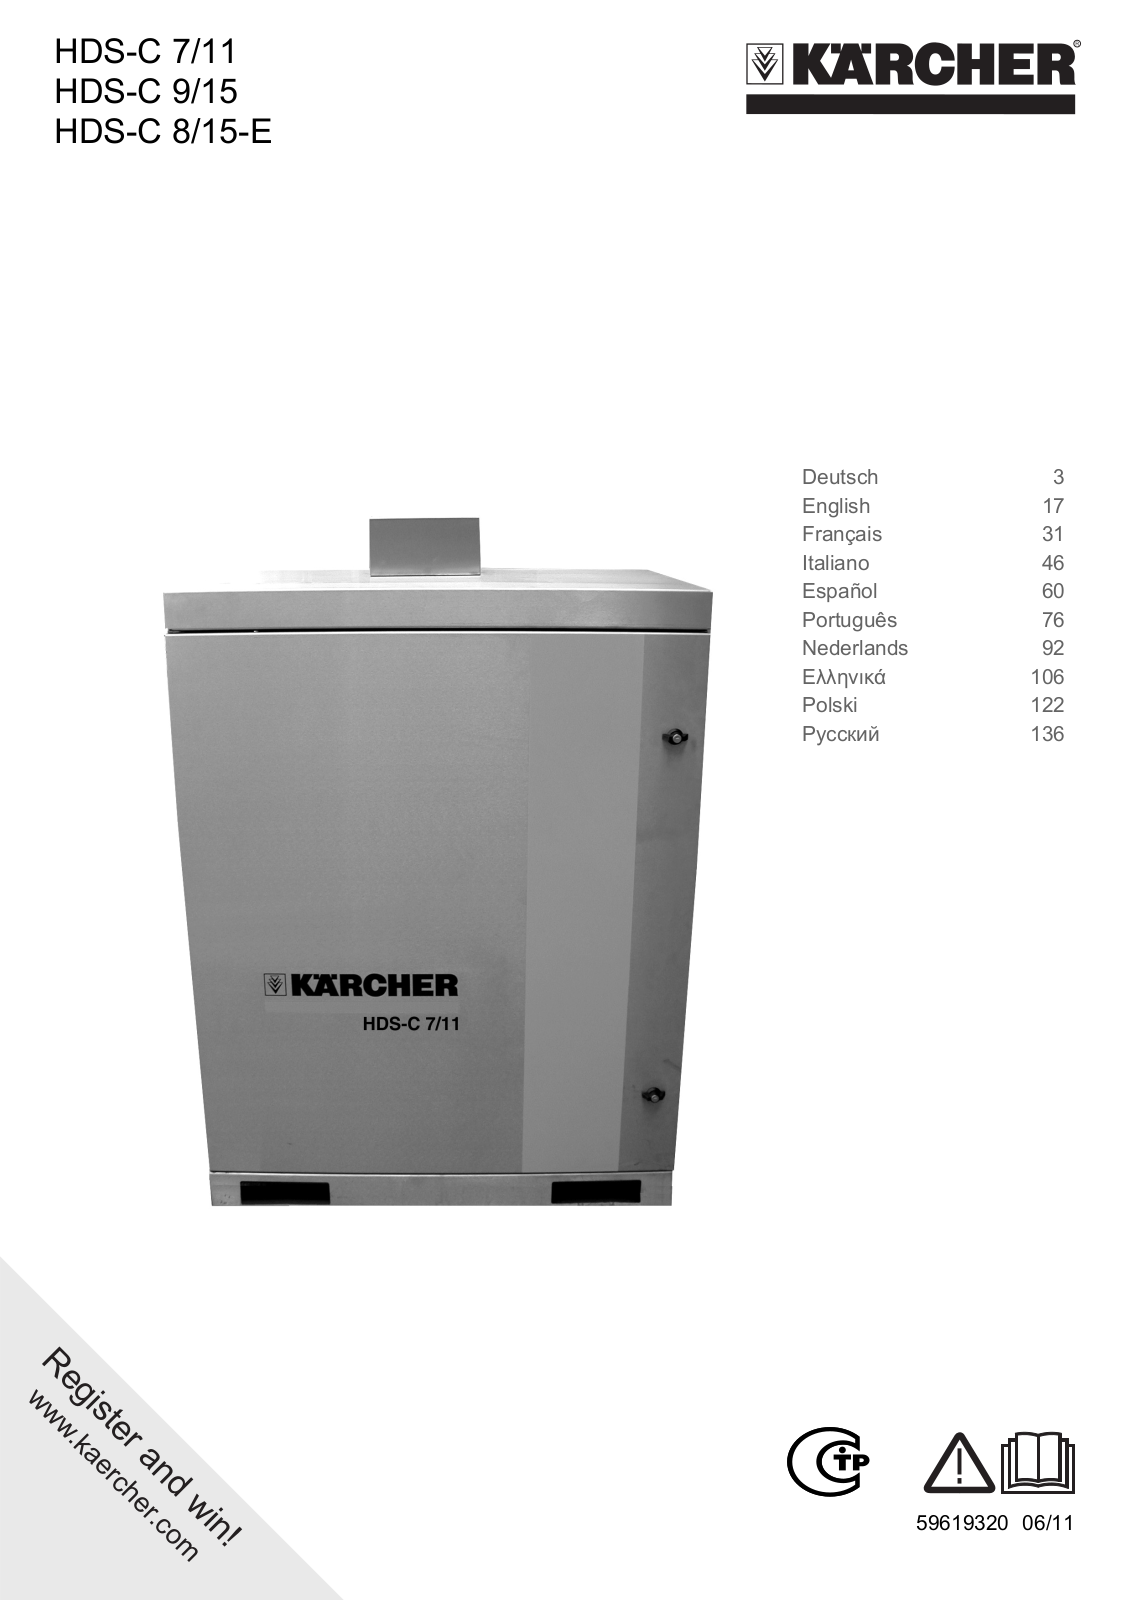 Karcher HDS-C 7/11 Steel User Manual